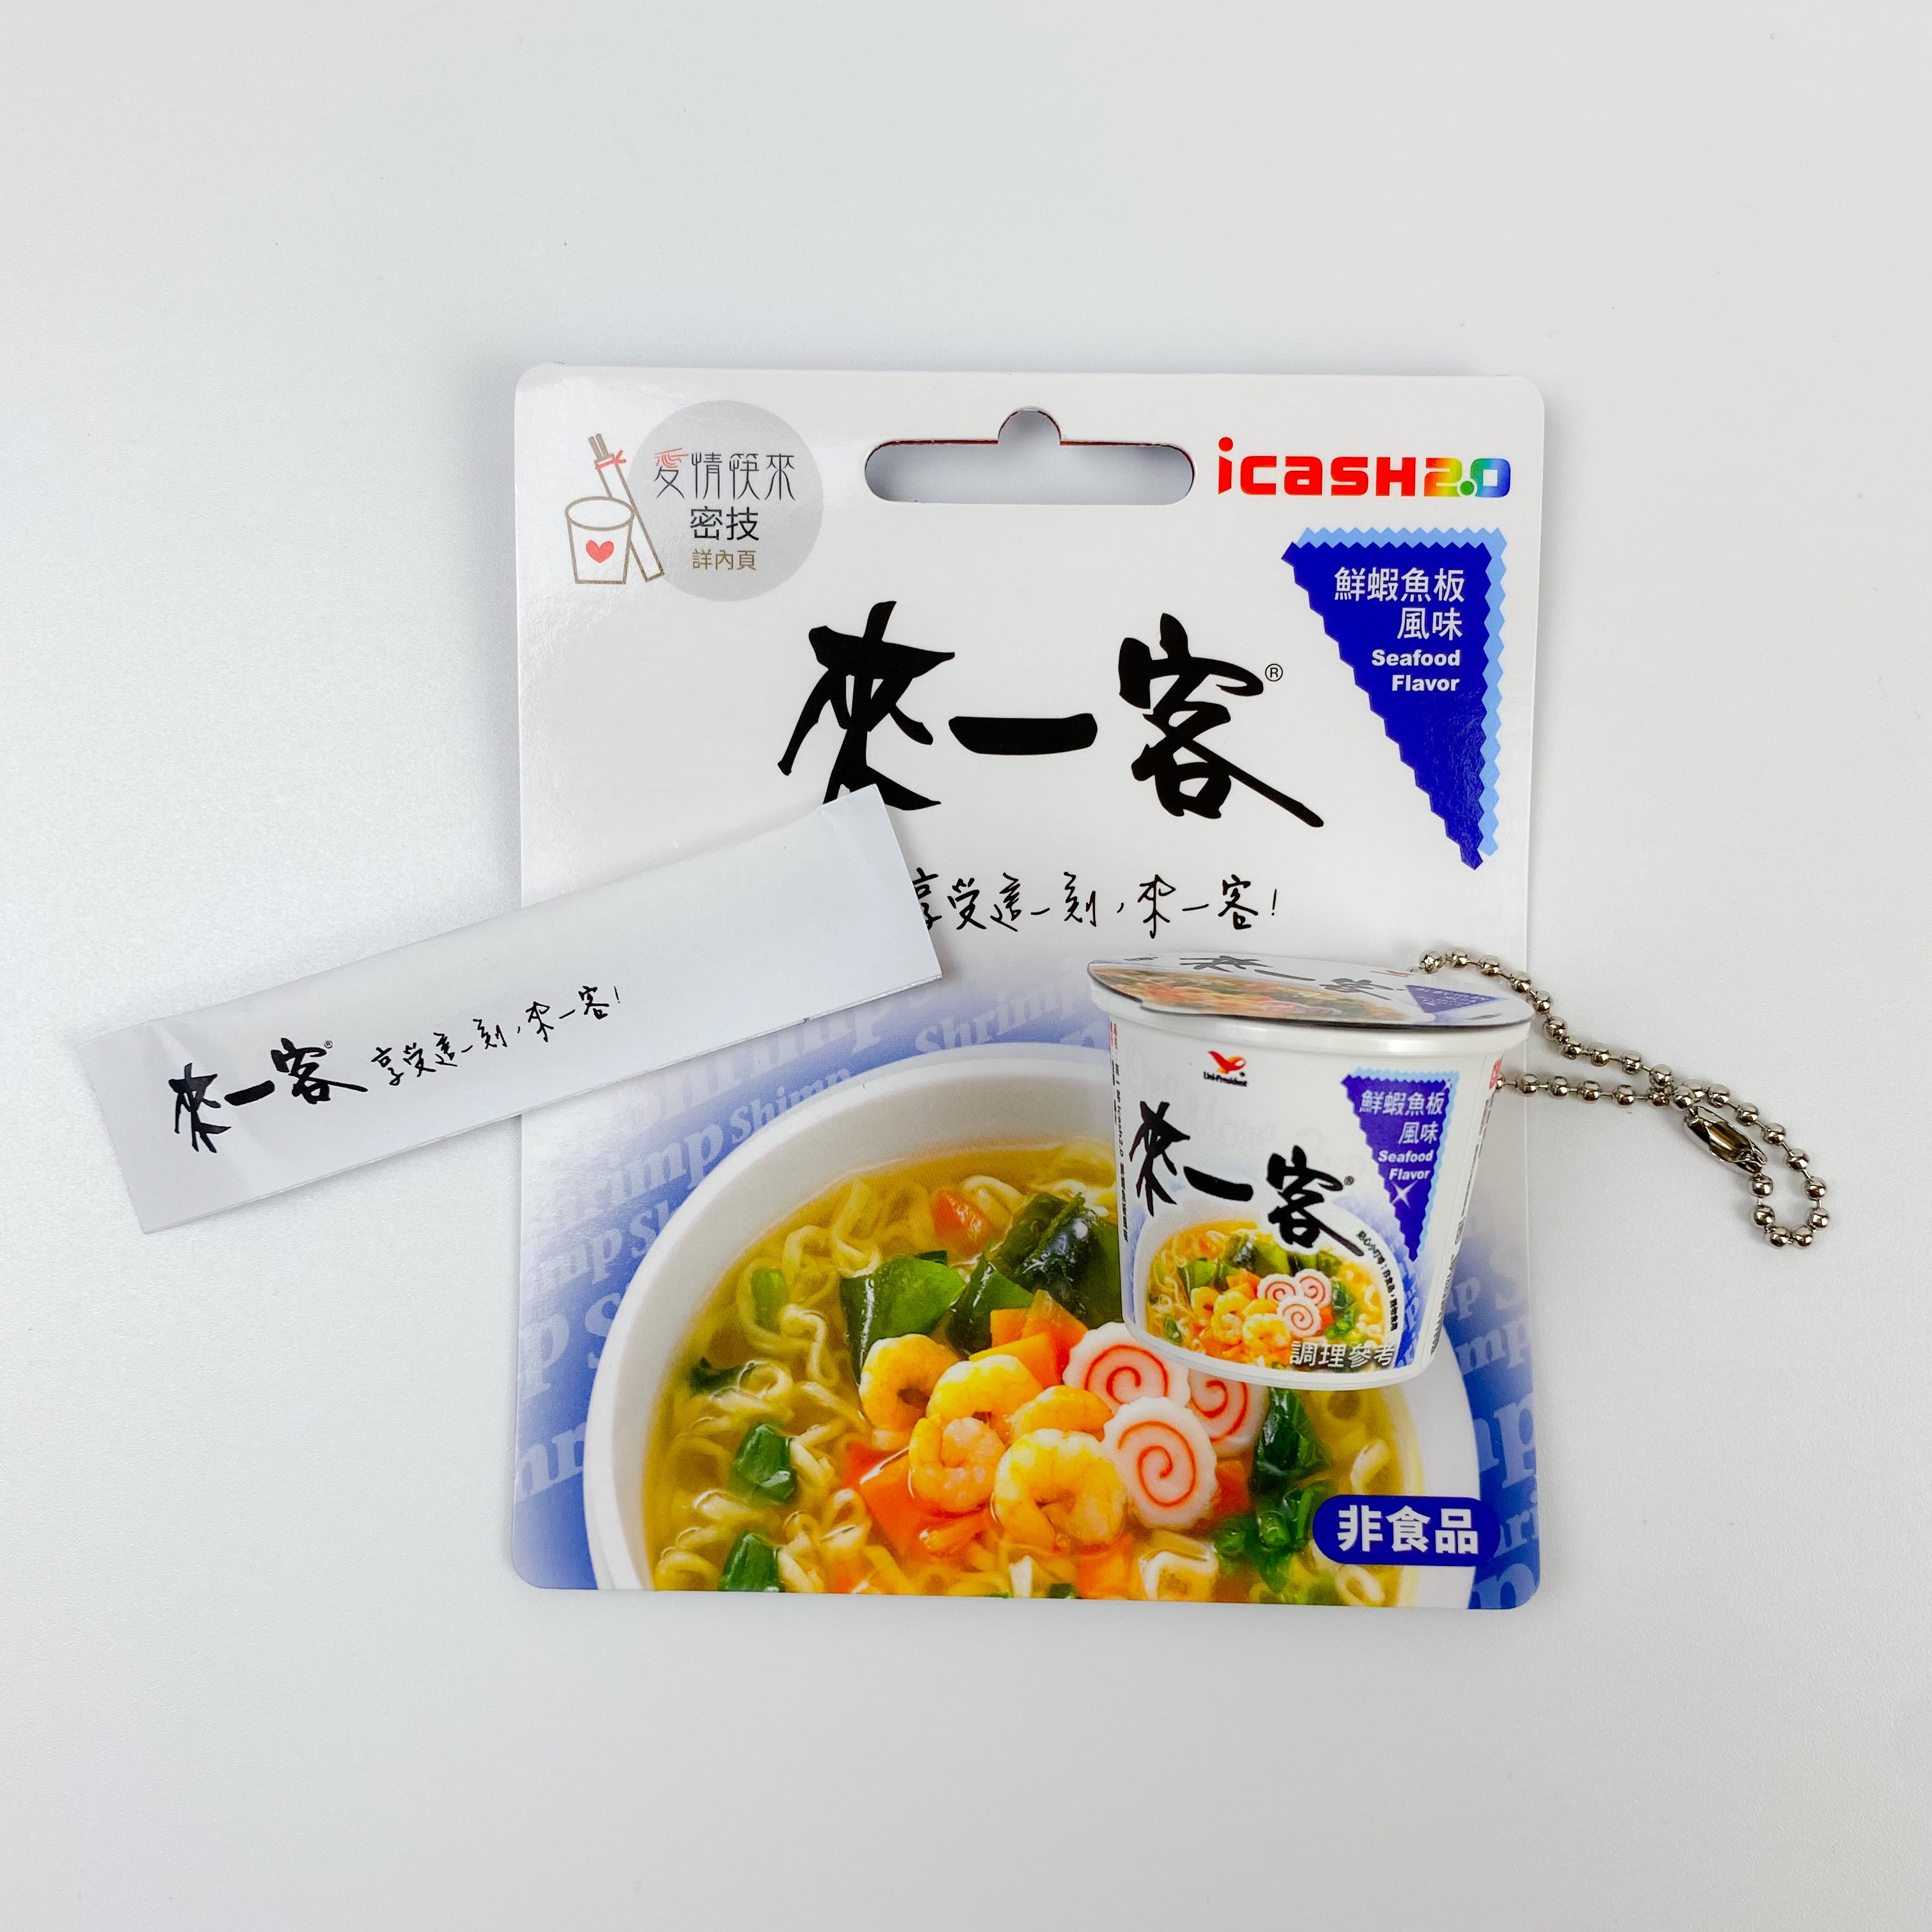 数量限定 レア台湾交通系ICカード 来一客｜來一客 鮮蝦魚板風味  icash2.0